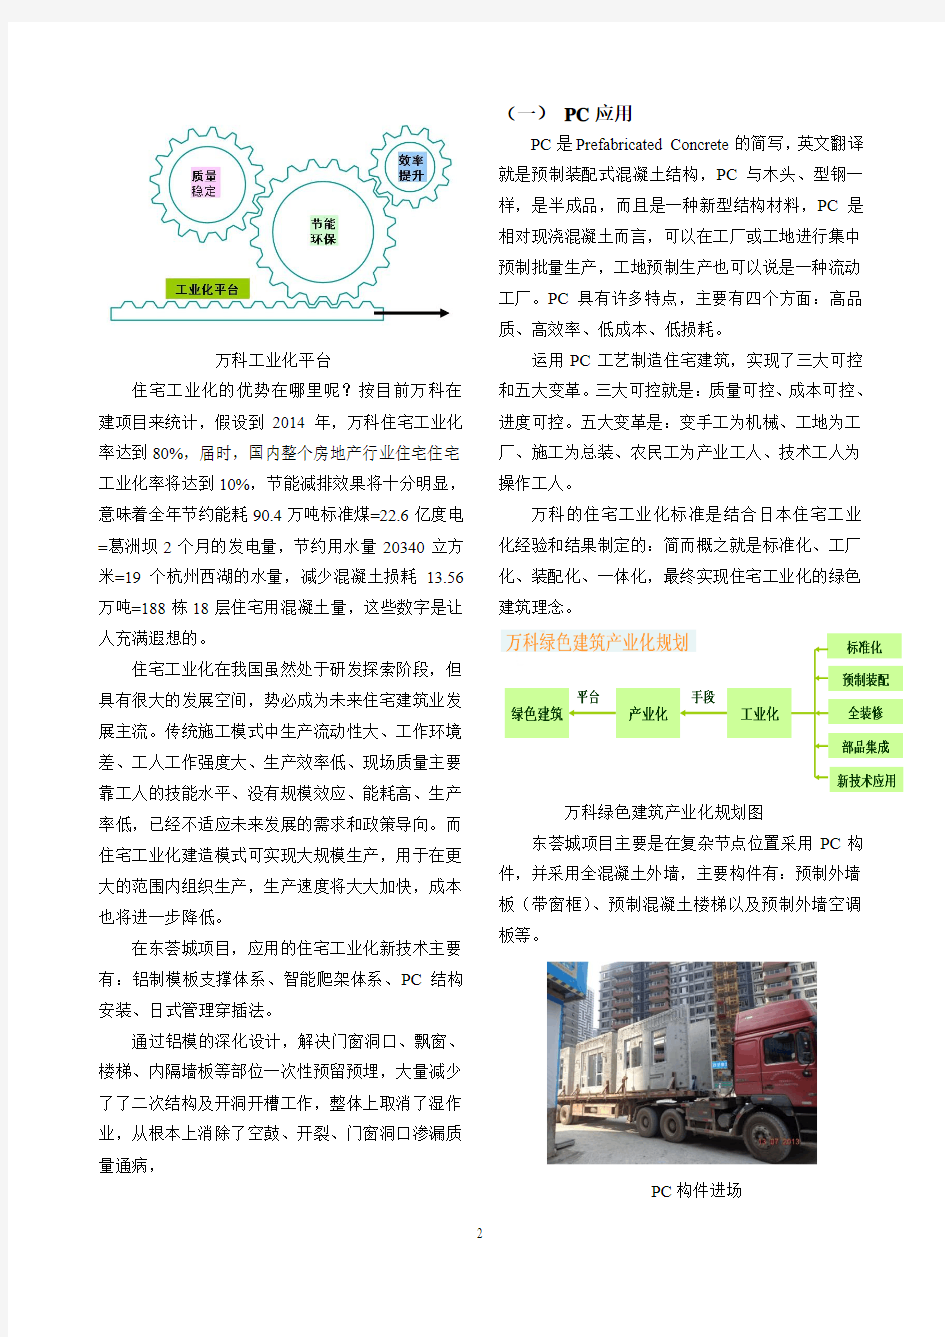 广州东荟城住宅施工工业化探索9.5